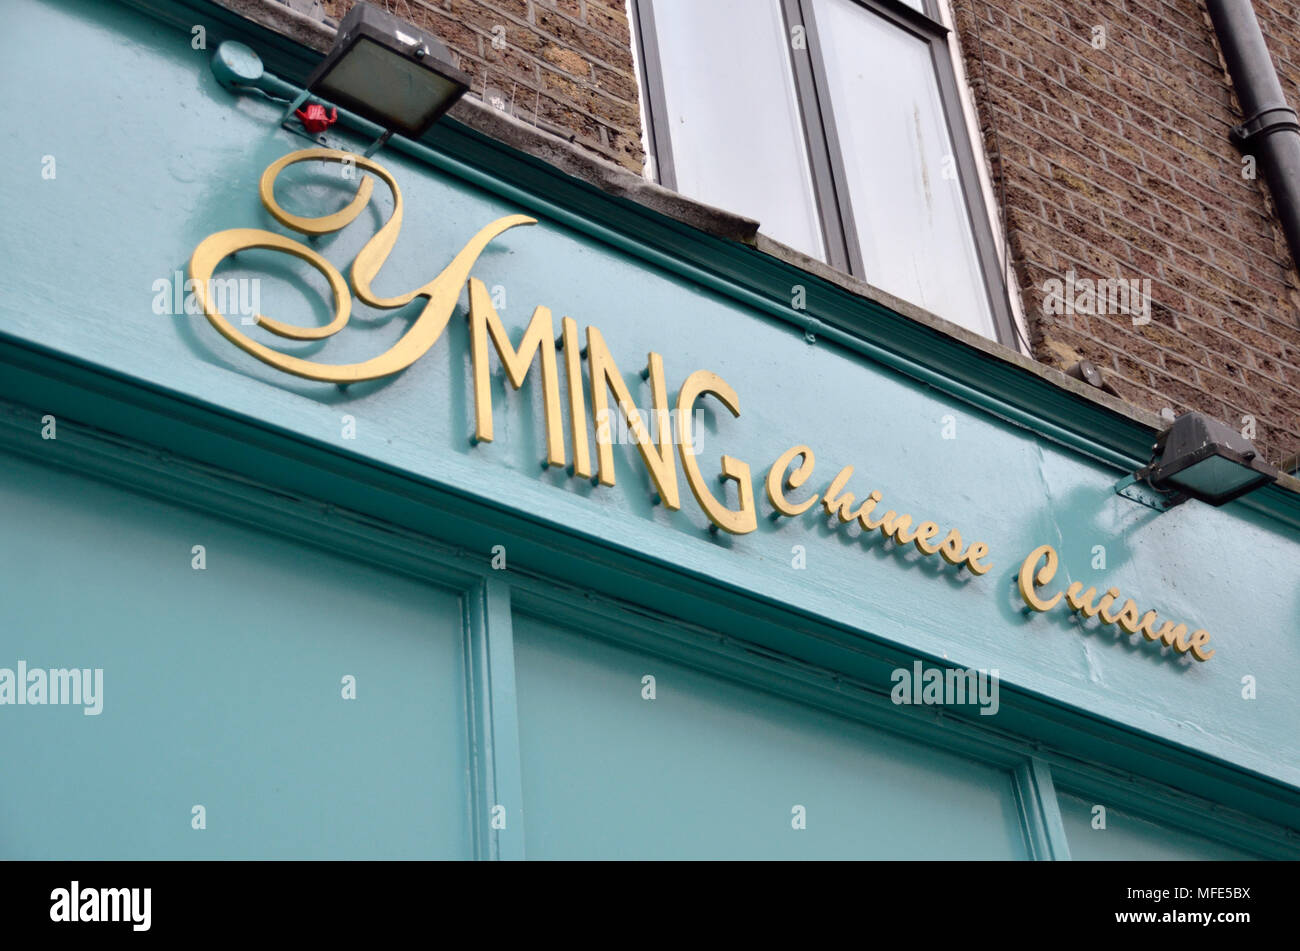 Yming Chinese restaurant in Soho, London, UK. Stock Photo